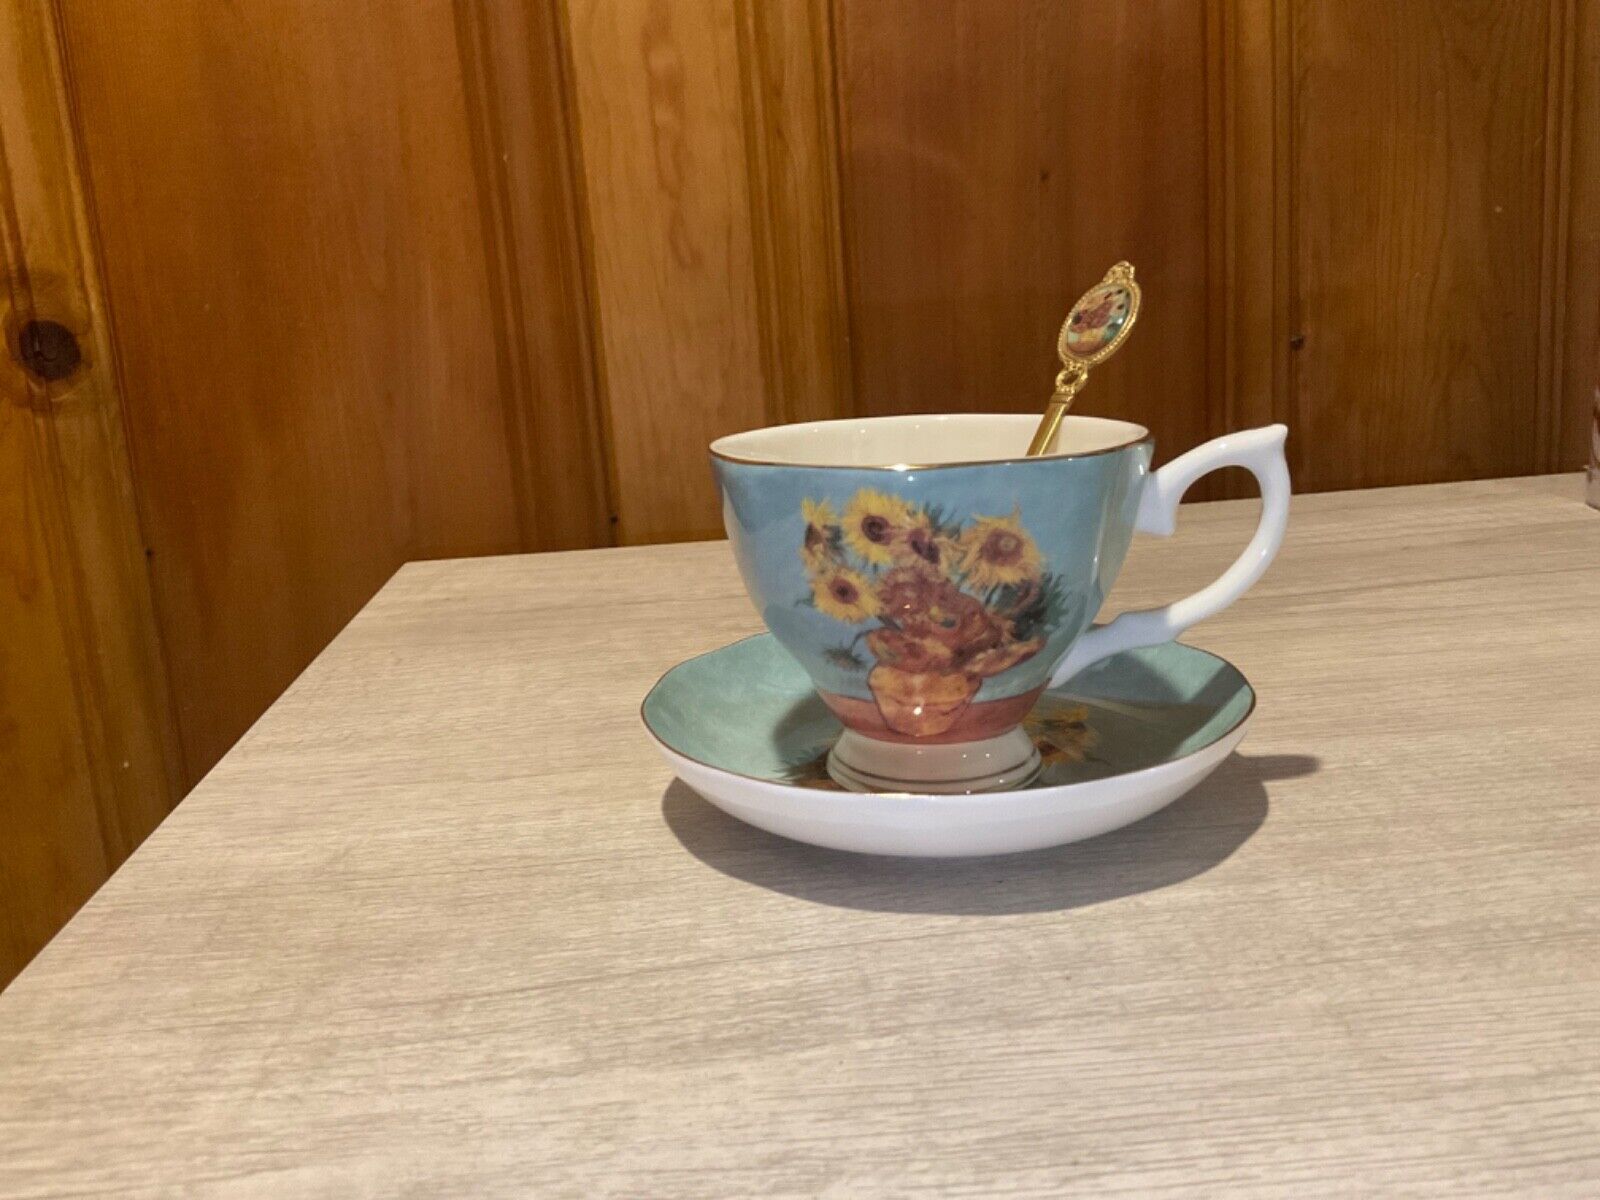 Van Gogh painting decorated Teacup